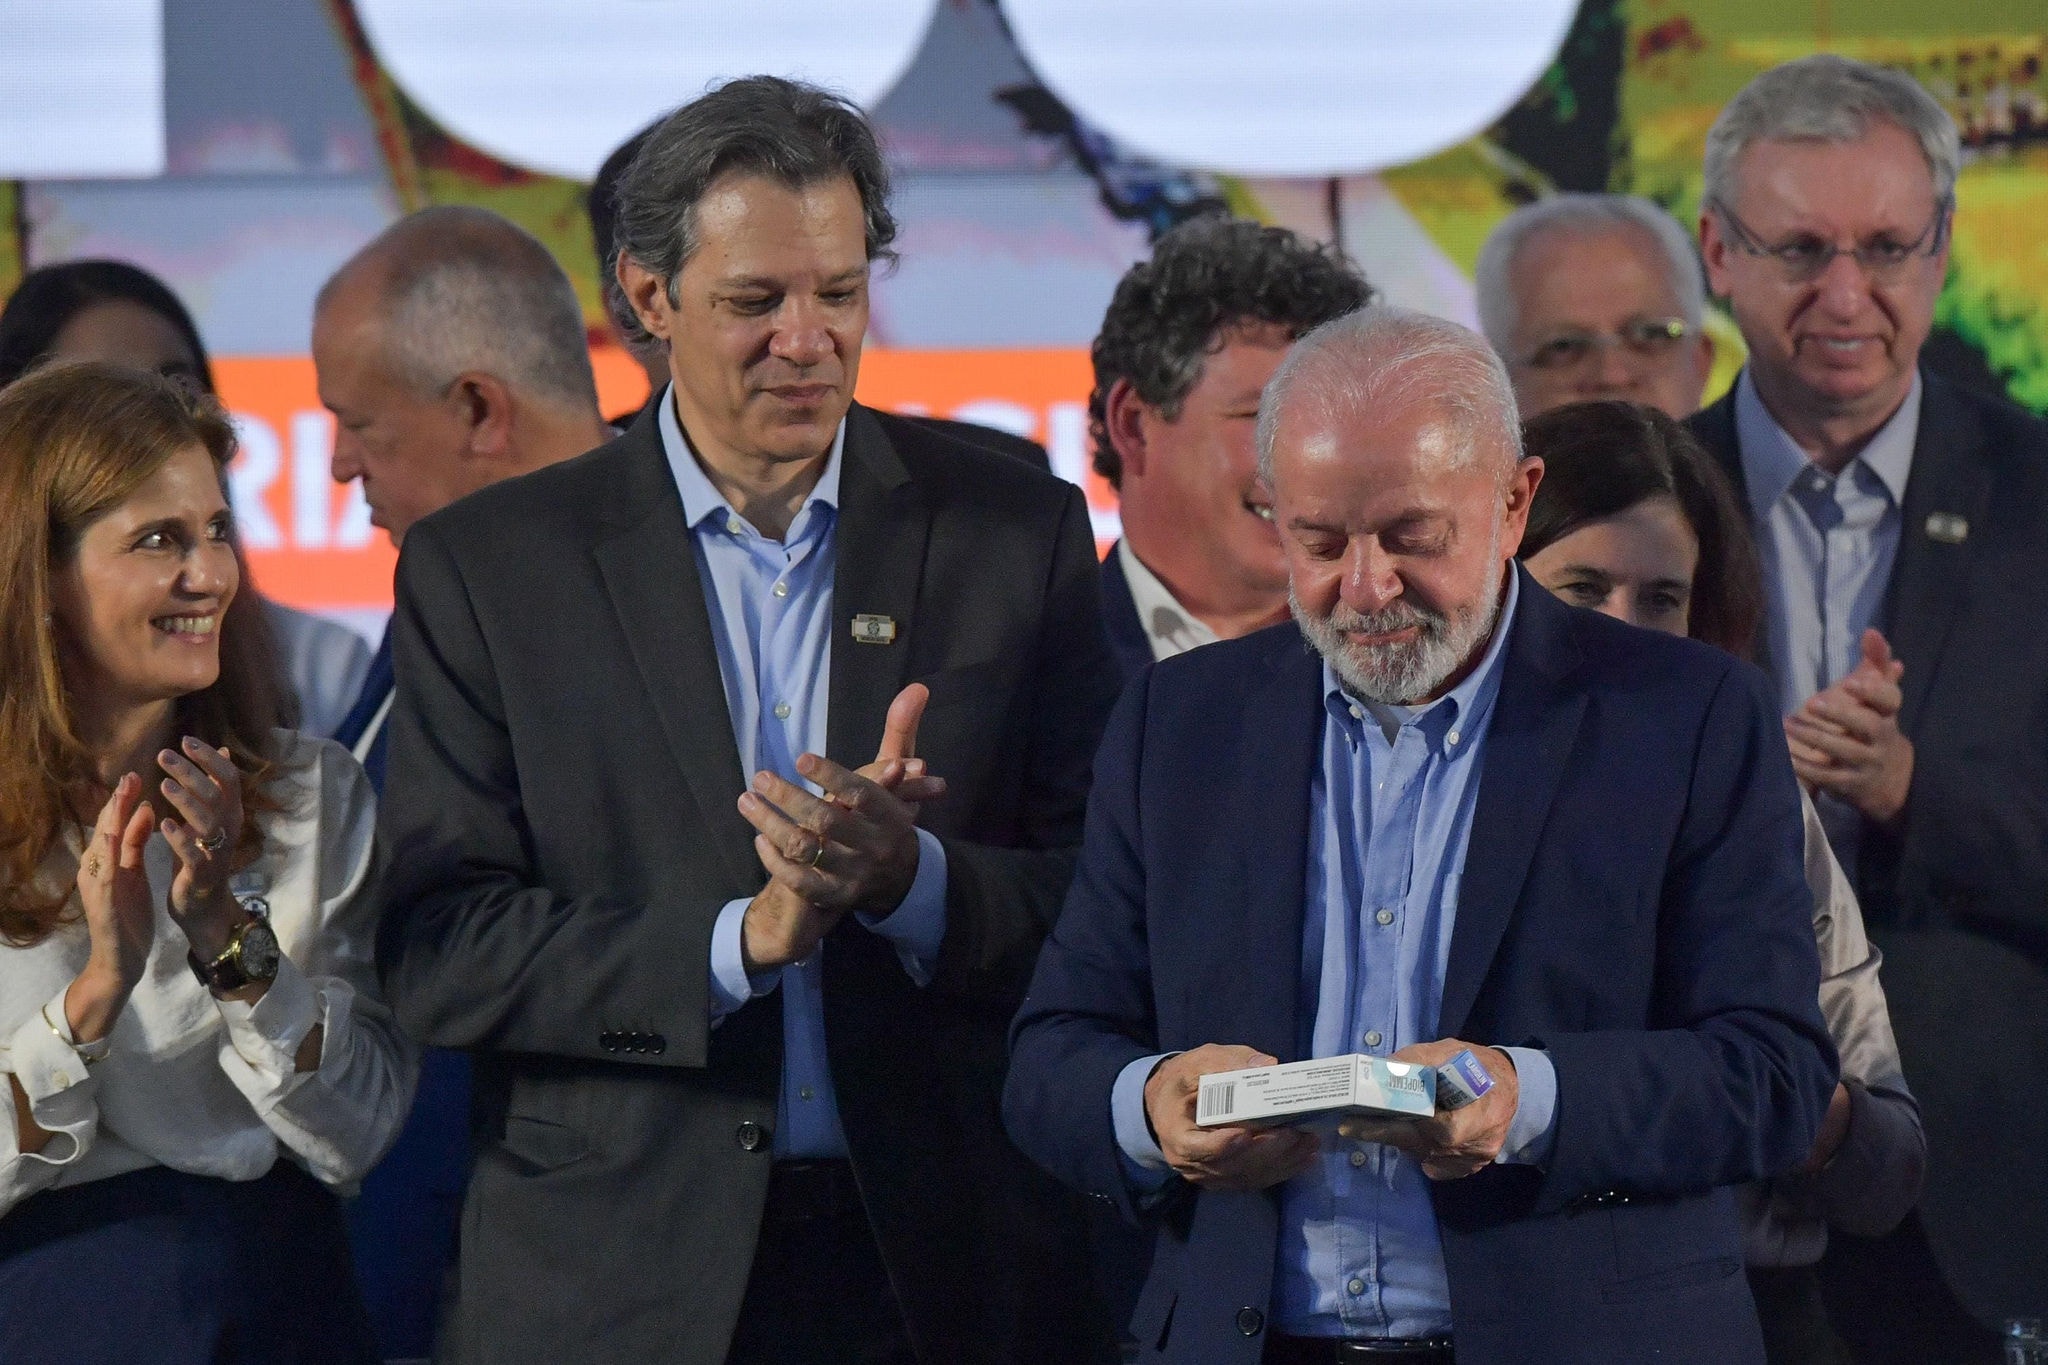 O ministro da Fazenda, Fernando Haddad, e o presidente Luiz Inácio Lula da Silva (PT) durante a agenda em Nova Lima, na região metropolitana de Belo Horizonte, nesta sexta-feira (26/4)